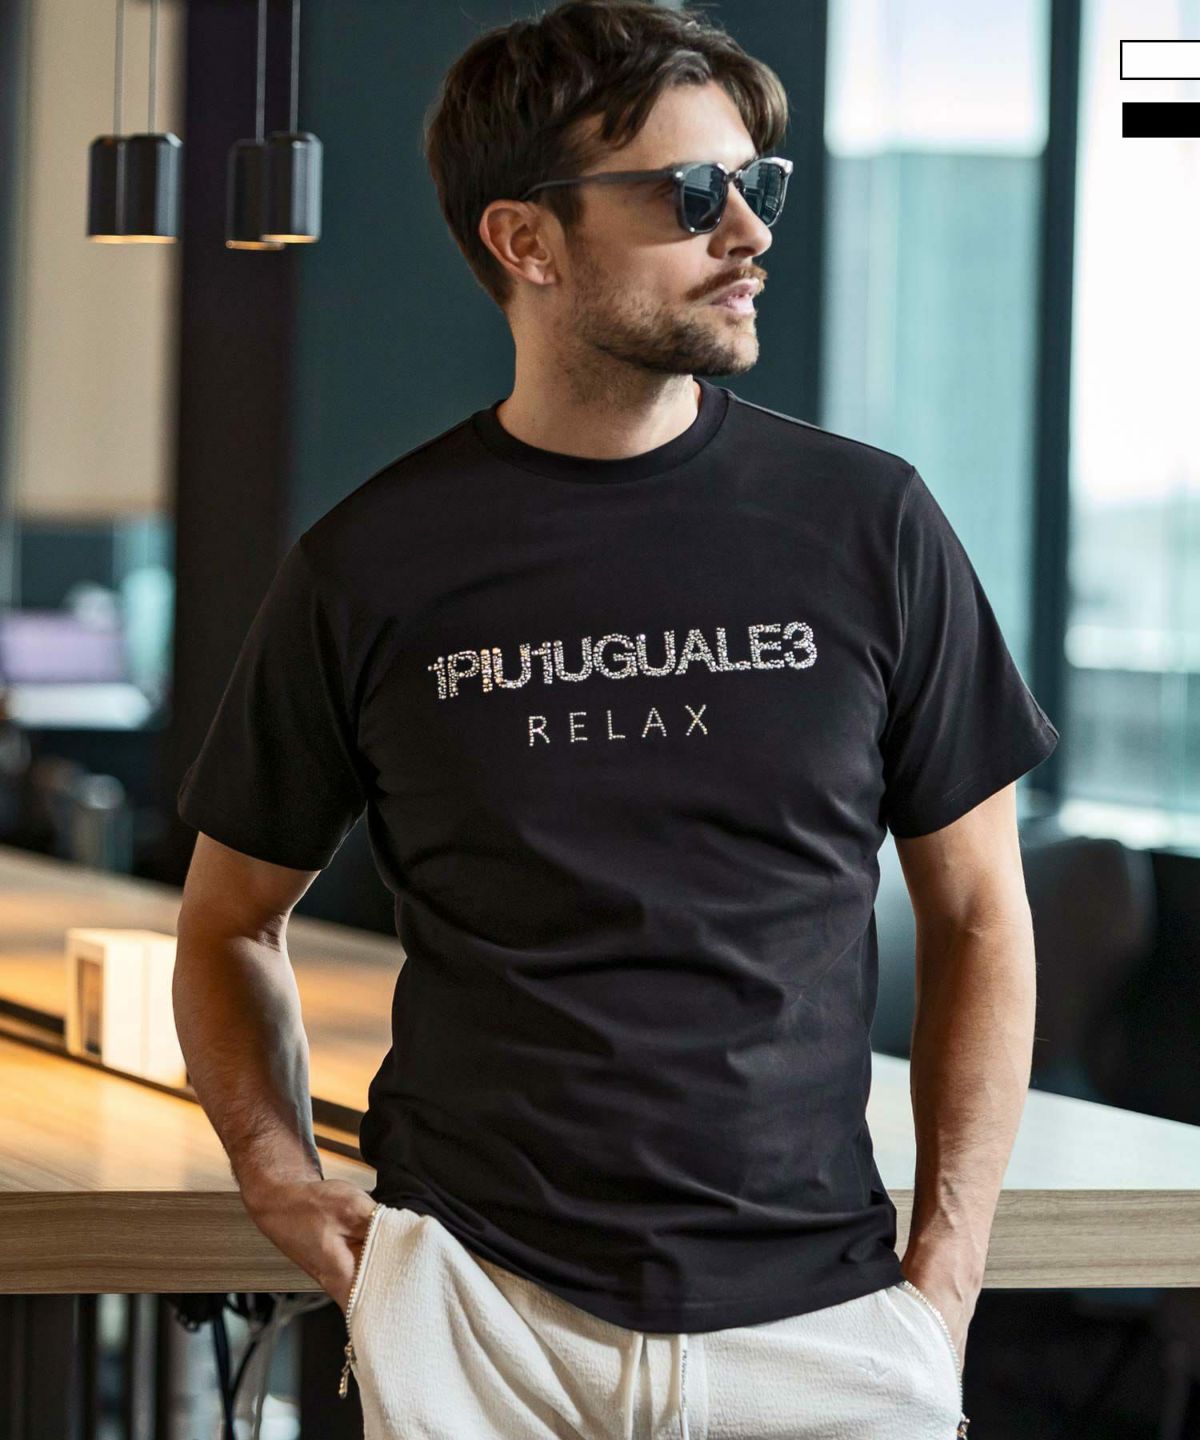 1PIU1UGUALE3 RELAX(ウノピゥウノウグァーレトレ リラックス)ランダムラインストーンロゴ半袖Tシャツ